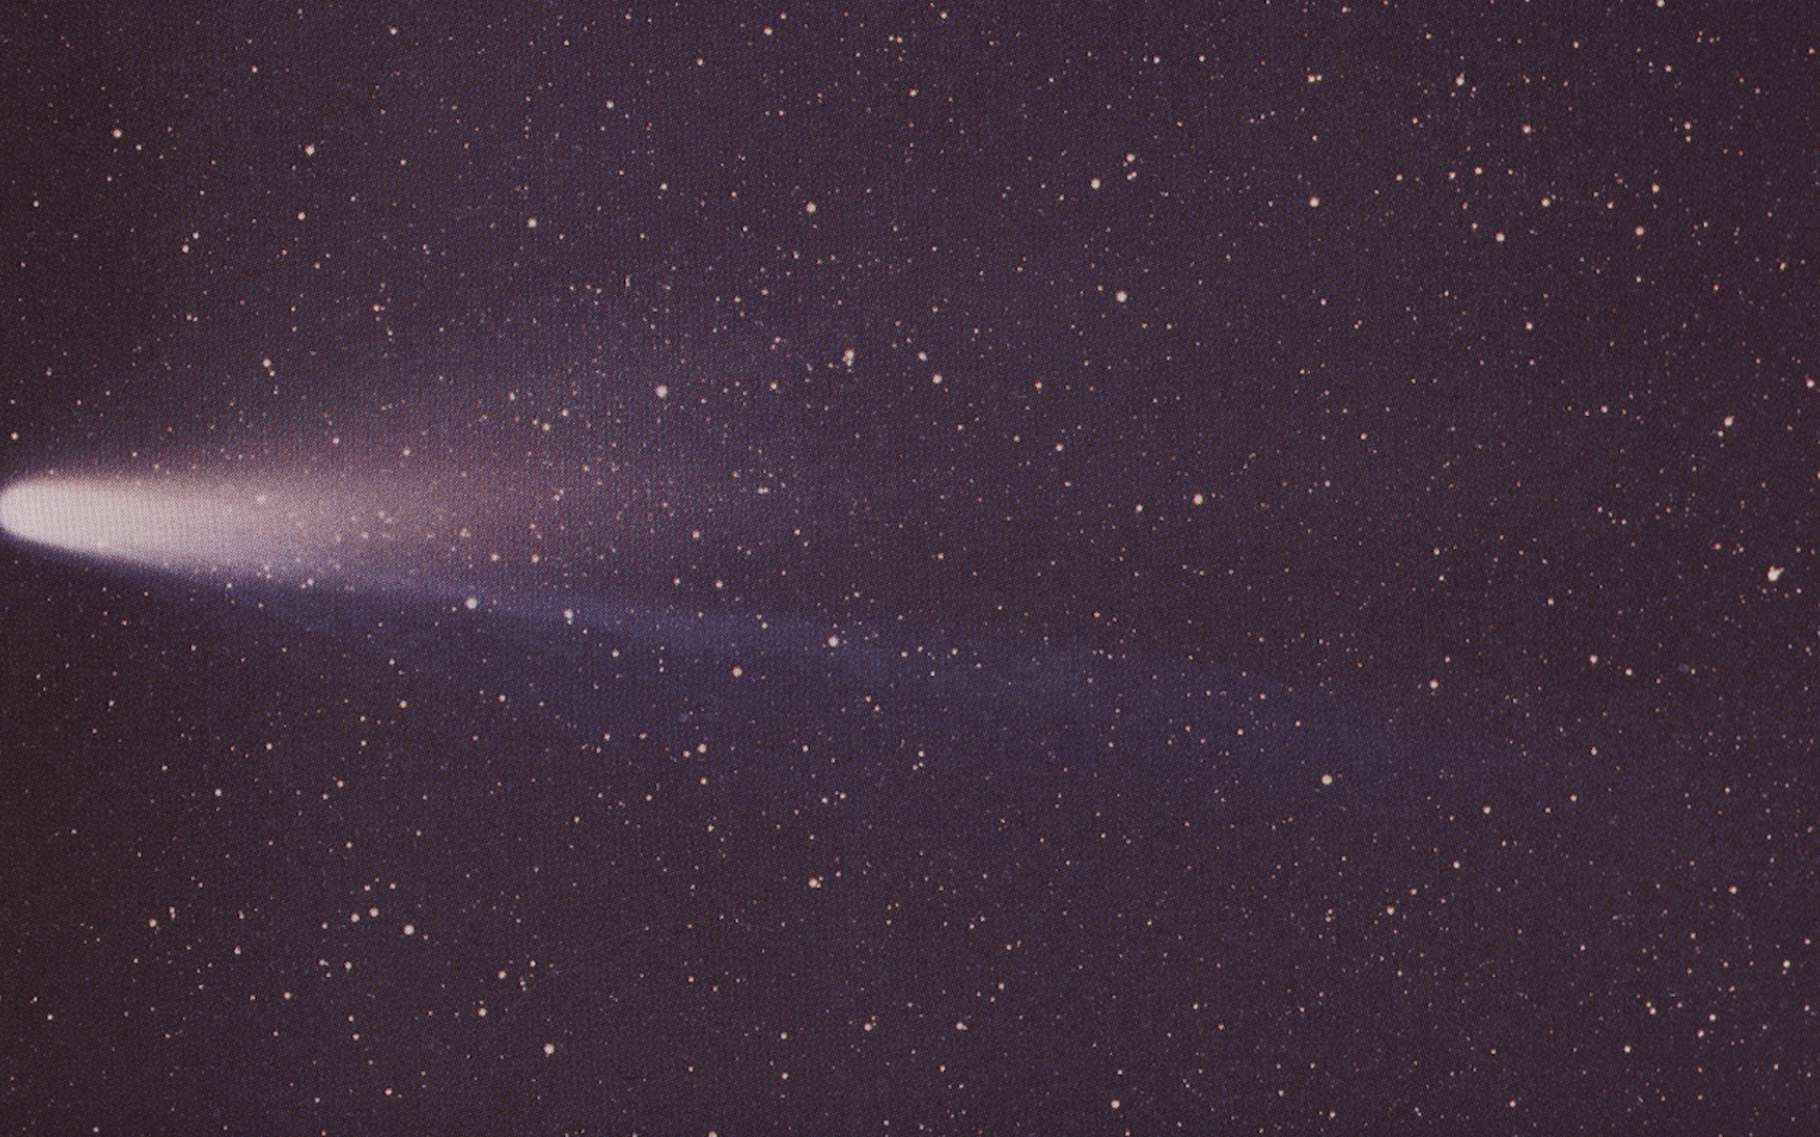 Êta Aquarides : observez les débris de la comète de Halley cette nuit